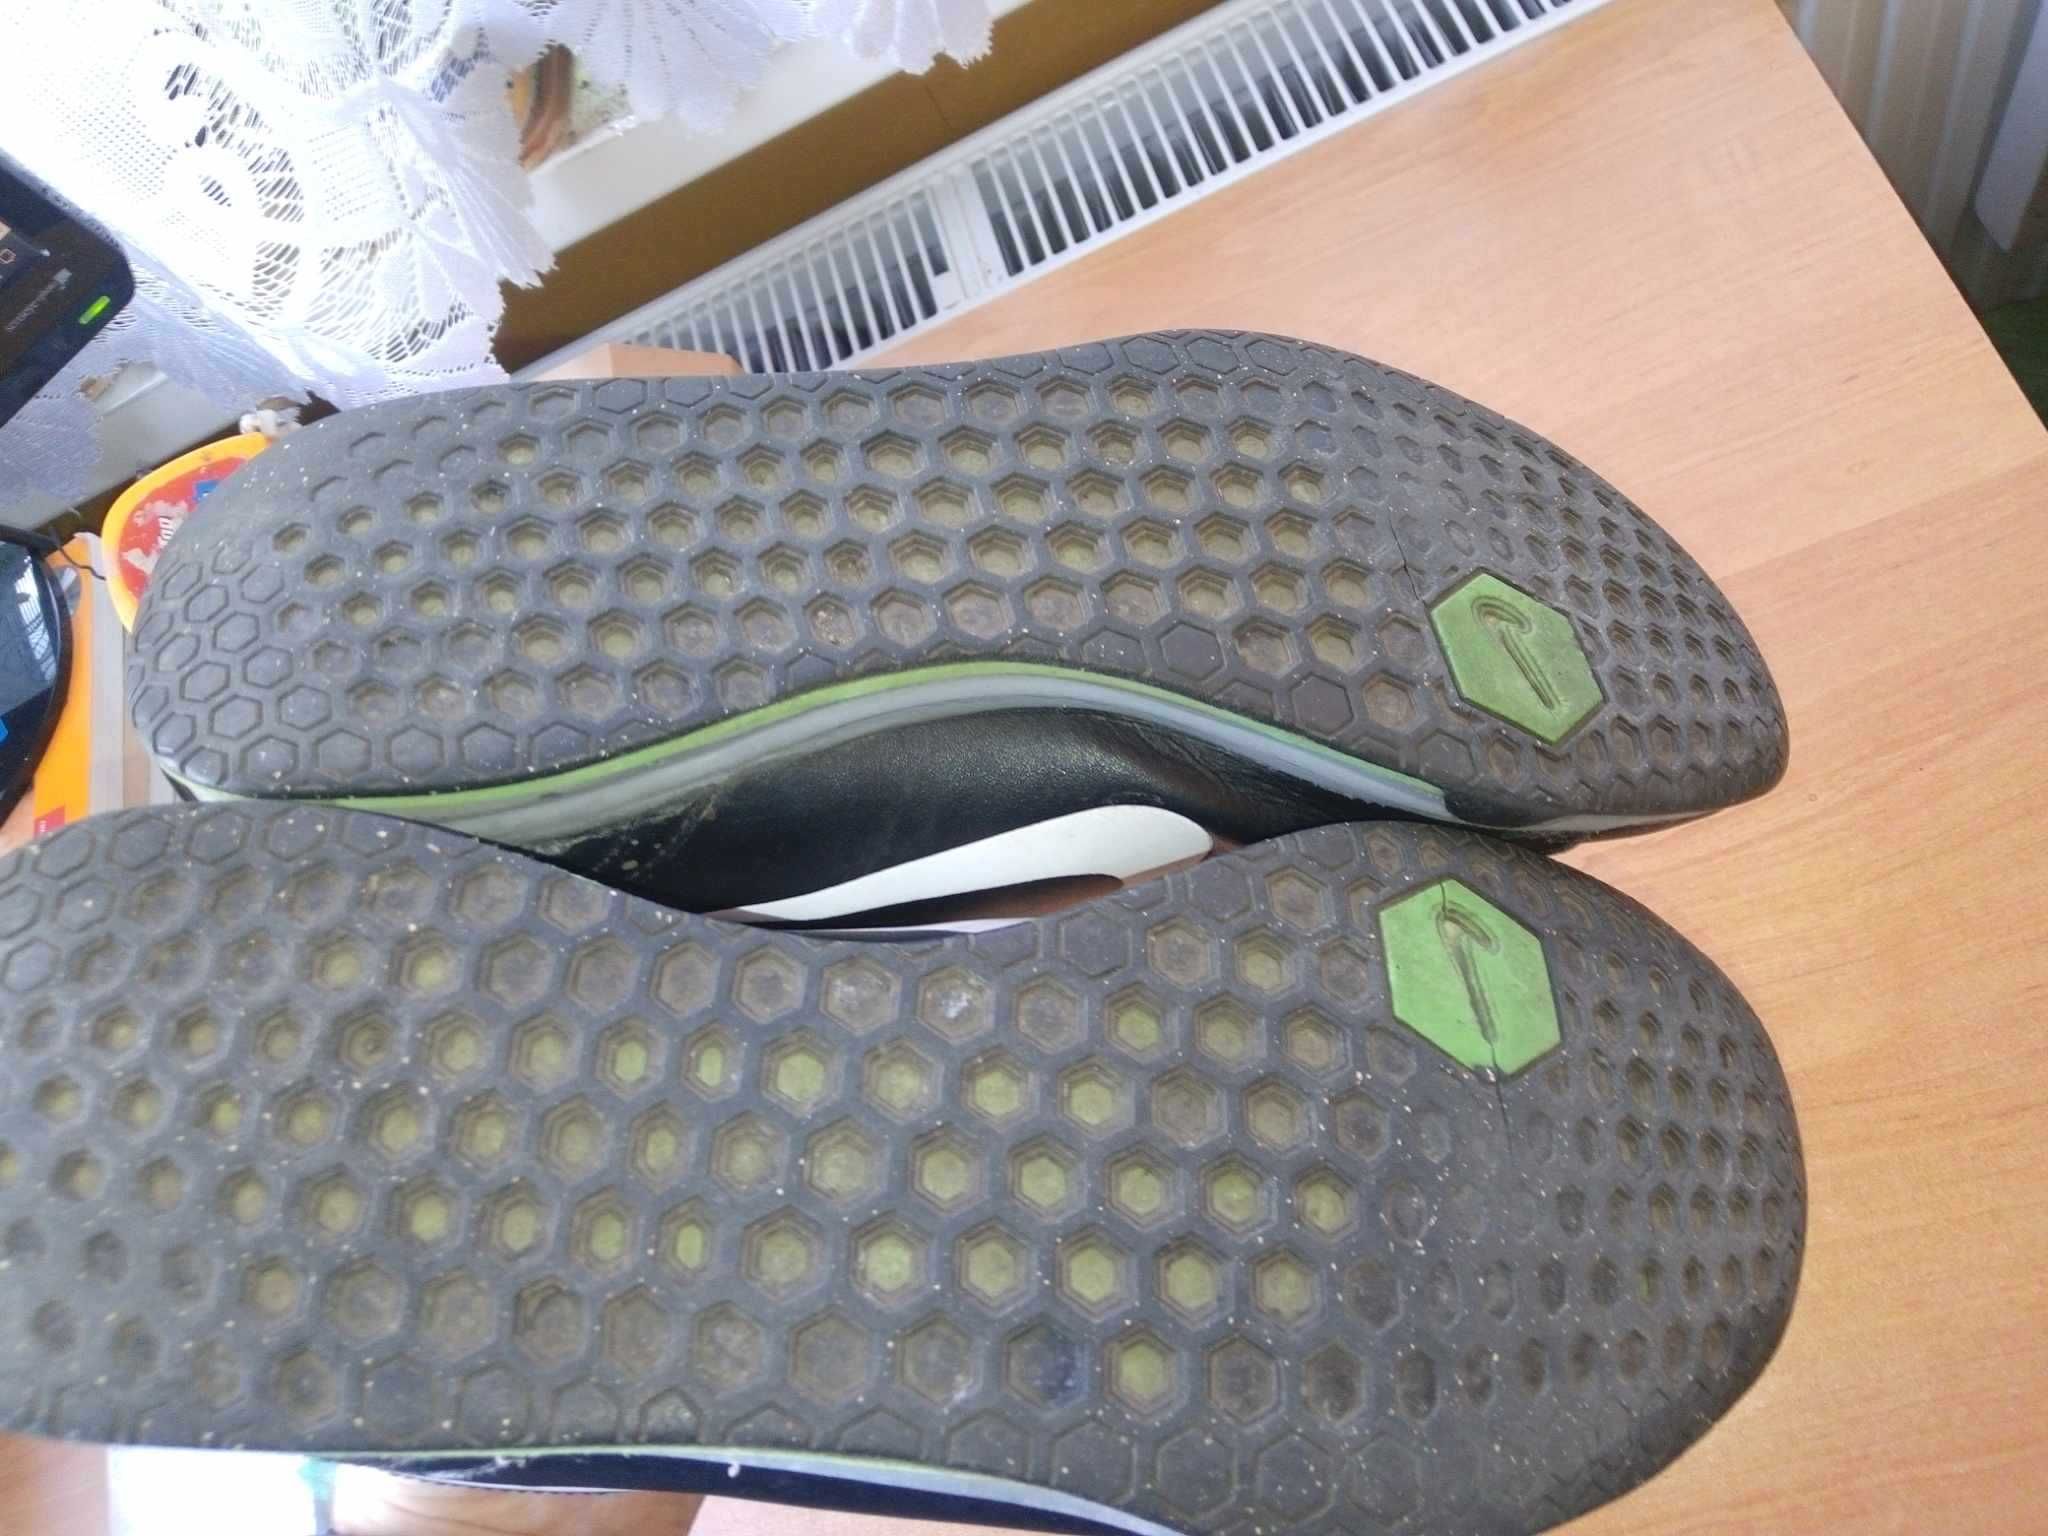 Buty sportowe męskie Nike Circuit Trainer II rozmiar 46 czarne zielone